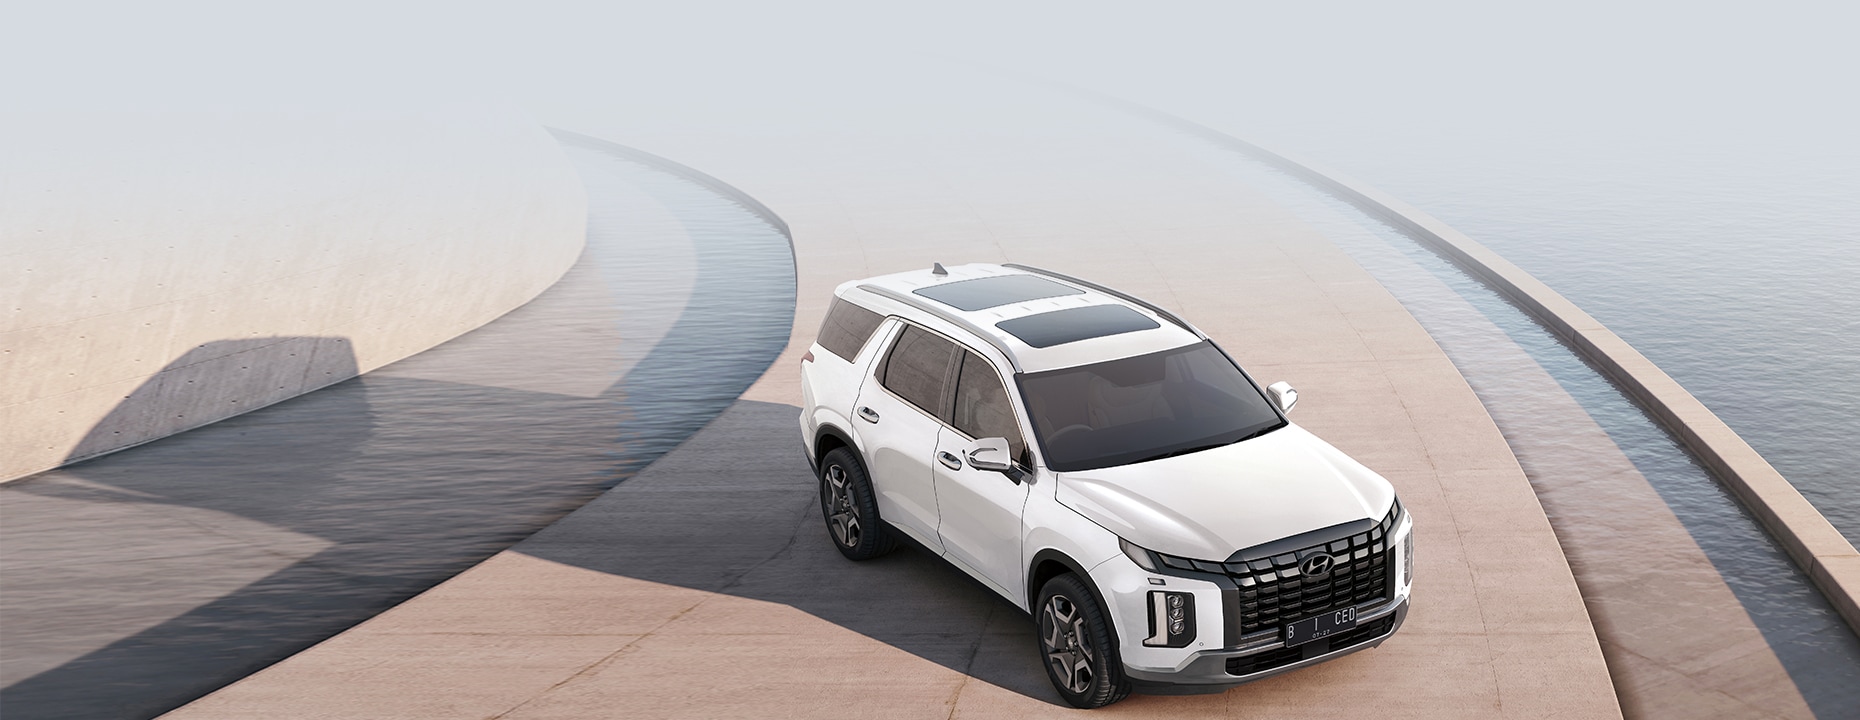 Harga Hyundai Palisade Terbaru, Review Lengkap Spesifikasi dan Interior!